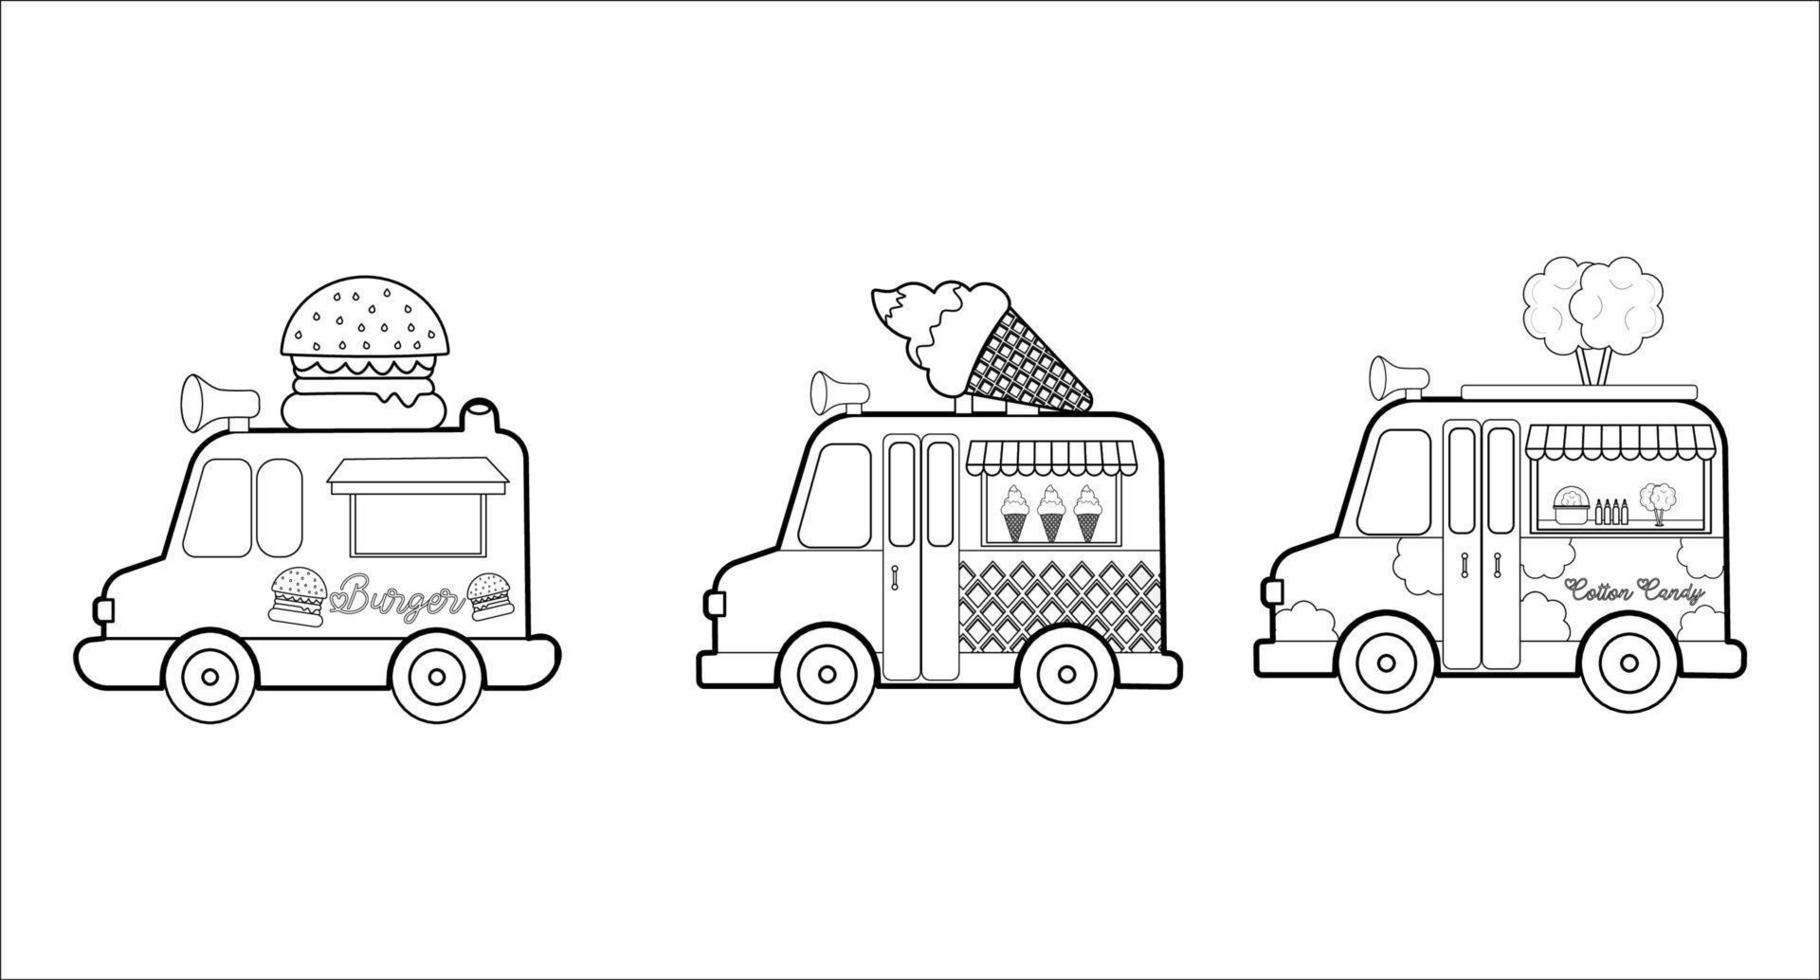 coloration pages. nourriture camion. dessin animé clipart ensemble pour des gamins activité coloration livre. vecteur illustration.